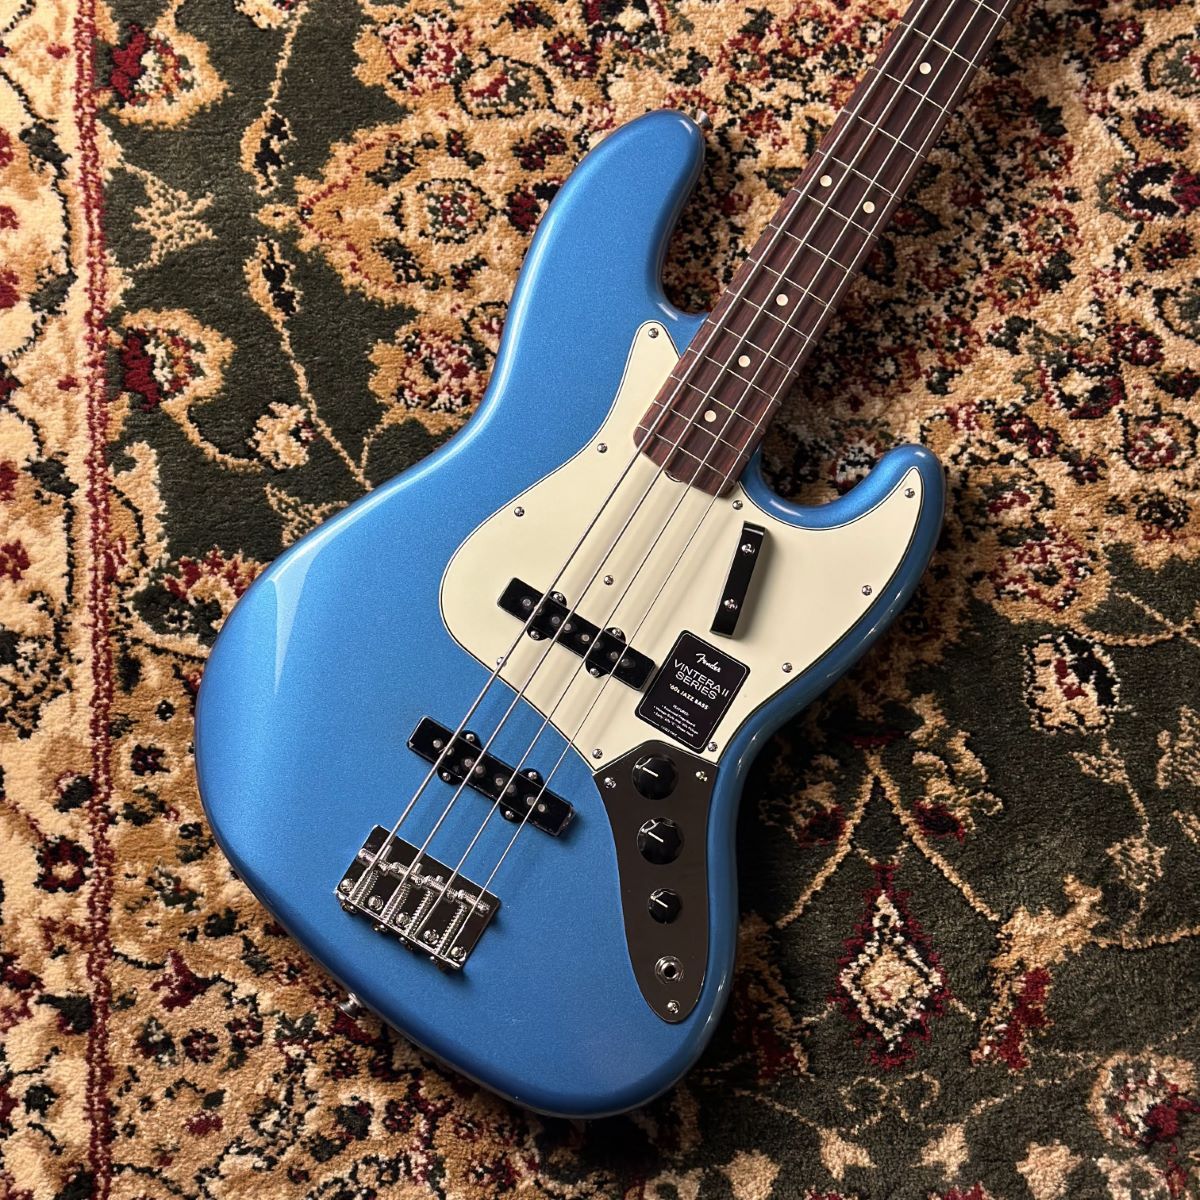 CONTENTSFender Vintera II '60s Jazz Bass Lake Placid Blue エレキベース ジャズベースこの商品について技術者による安心のアフターフォローギターアドバイザーが楽器選びをサポート最新情報を手に入れよう音楽をもっと楽しみたい方は音楽教室がおススメ♪お […]